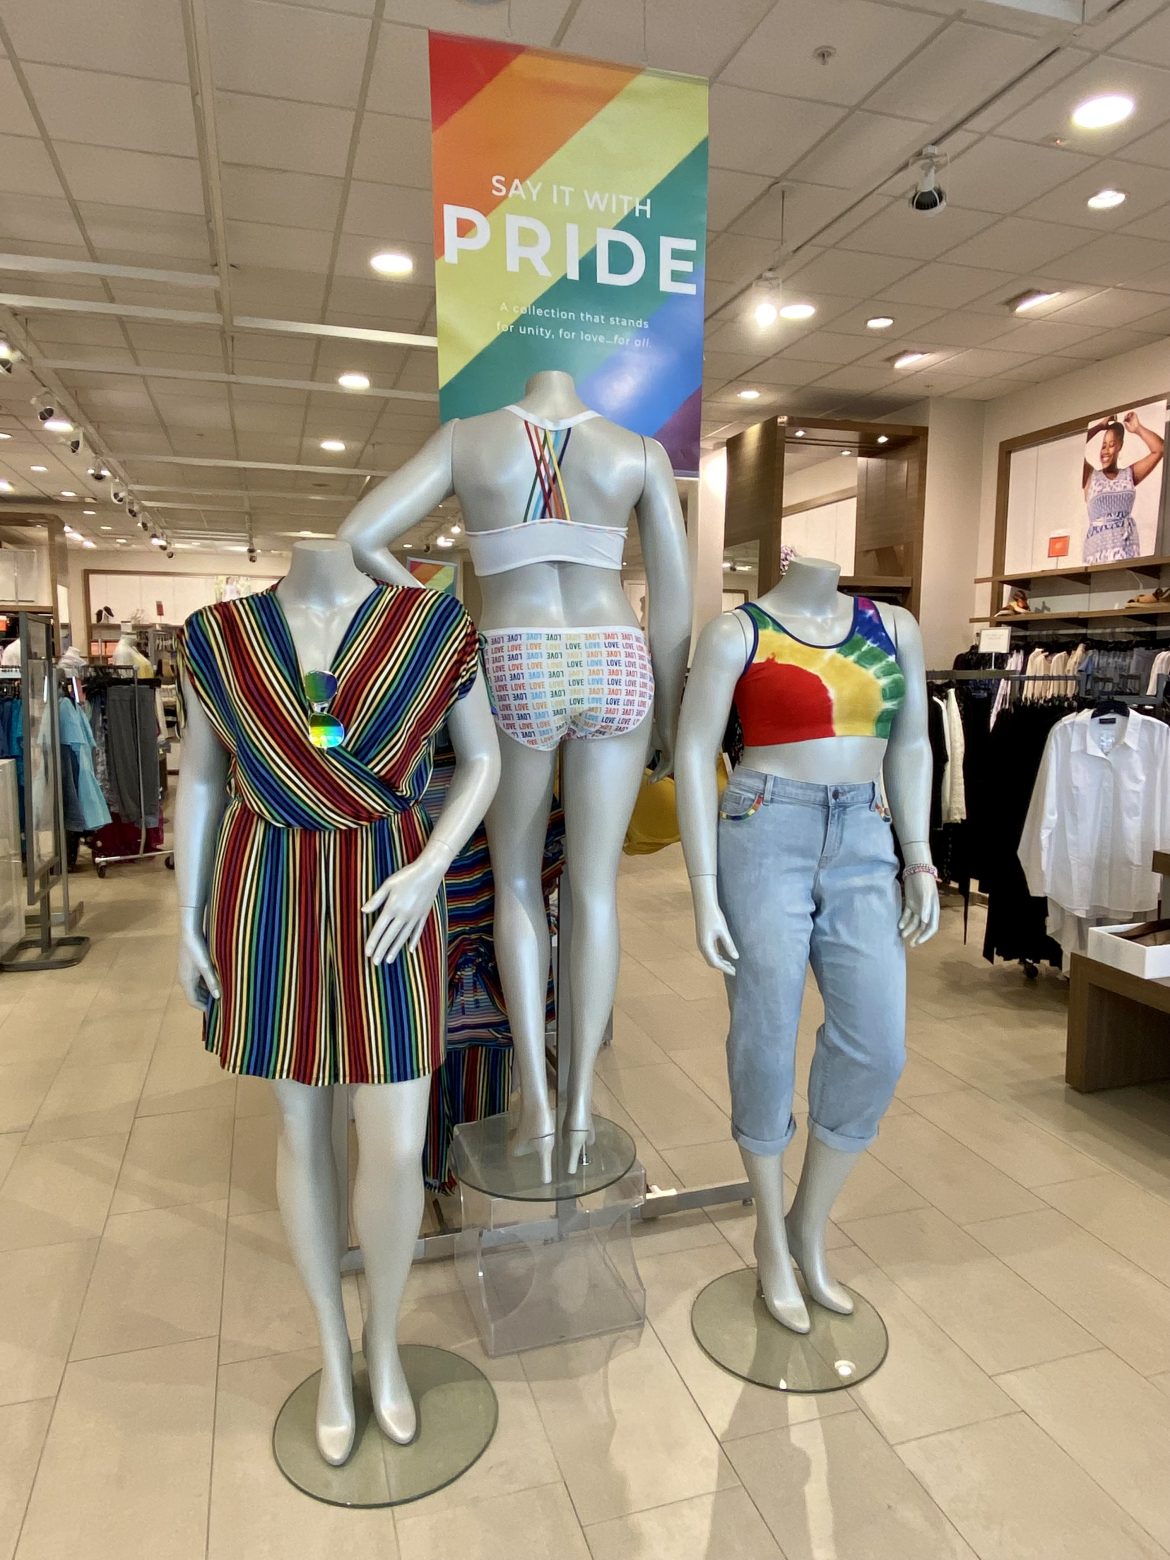 Celebrating Pride Month at Holyoke Mall! Holyoke Mall